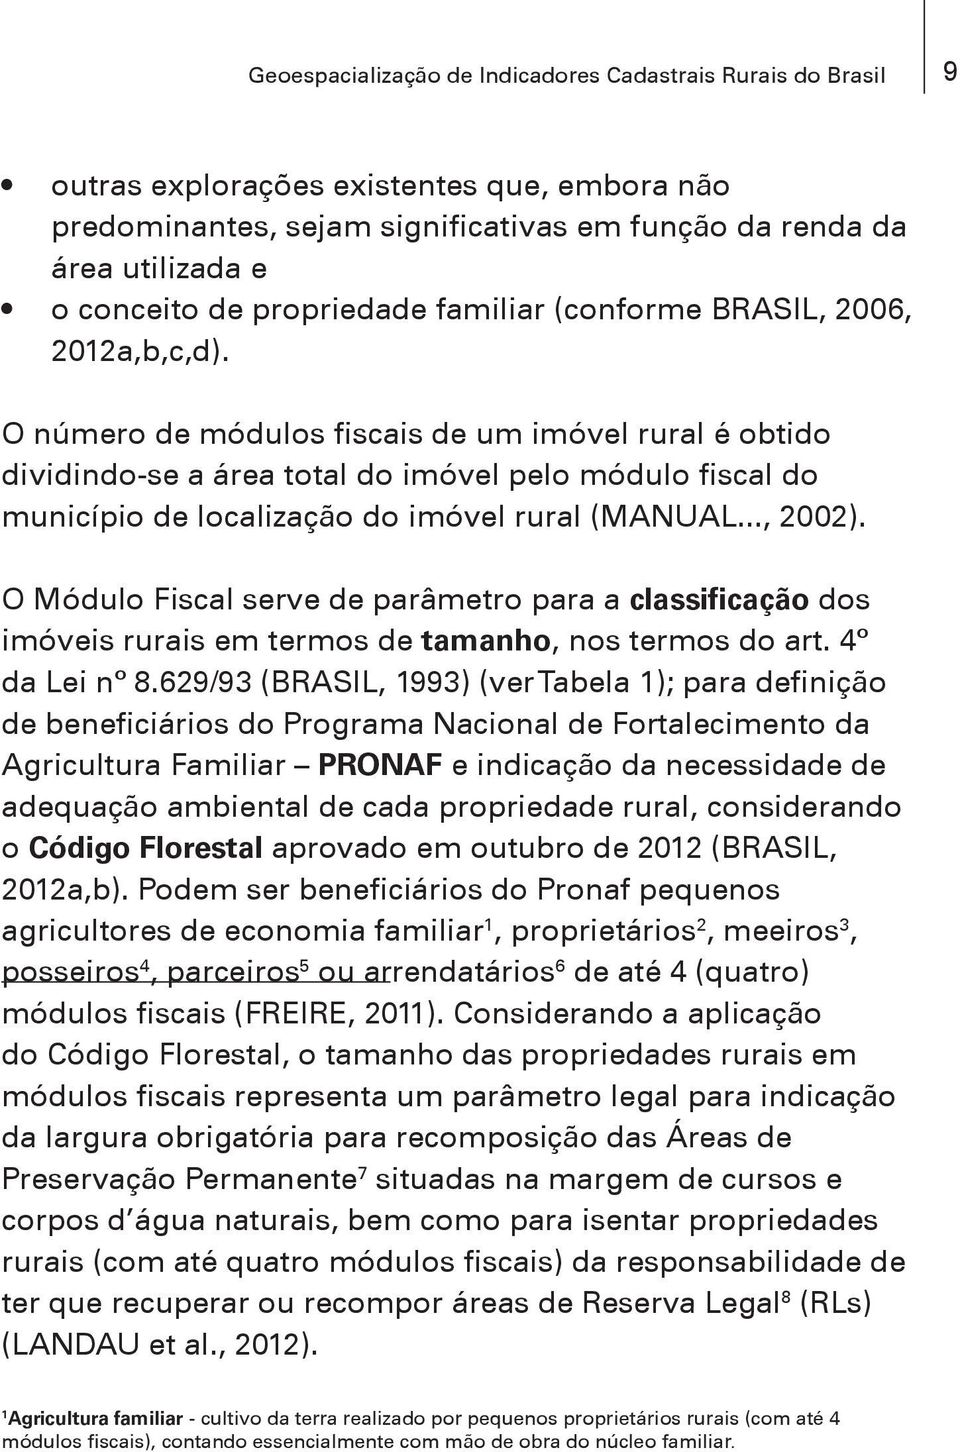 O número de módulos fiscais de um imóvel rural é obtido dividindo-se a área total do imóvel pelo módulo fiscal do município de localização do imóvel rural (MANUAL..., 2002).